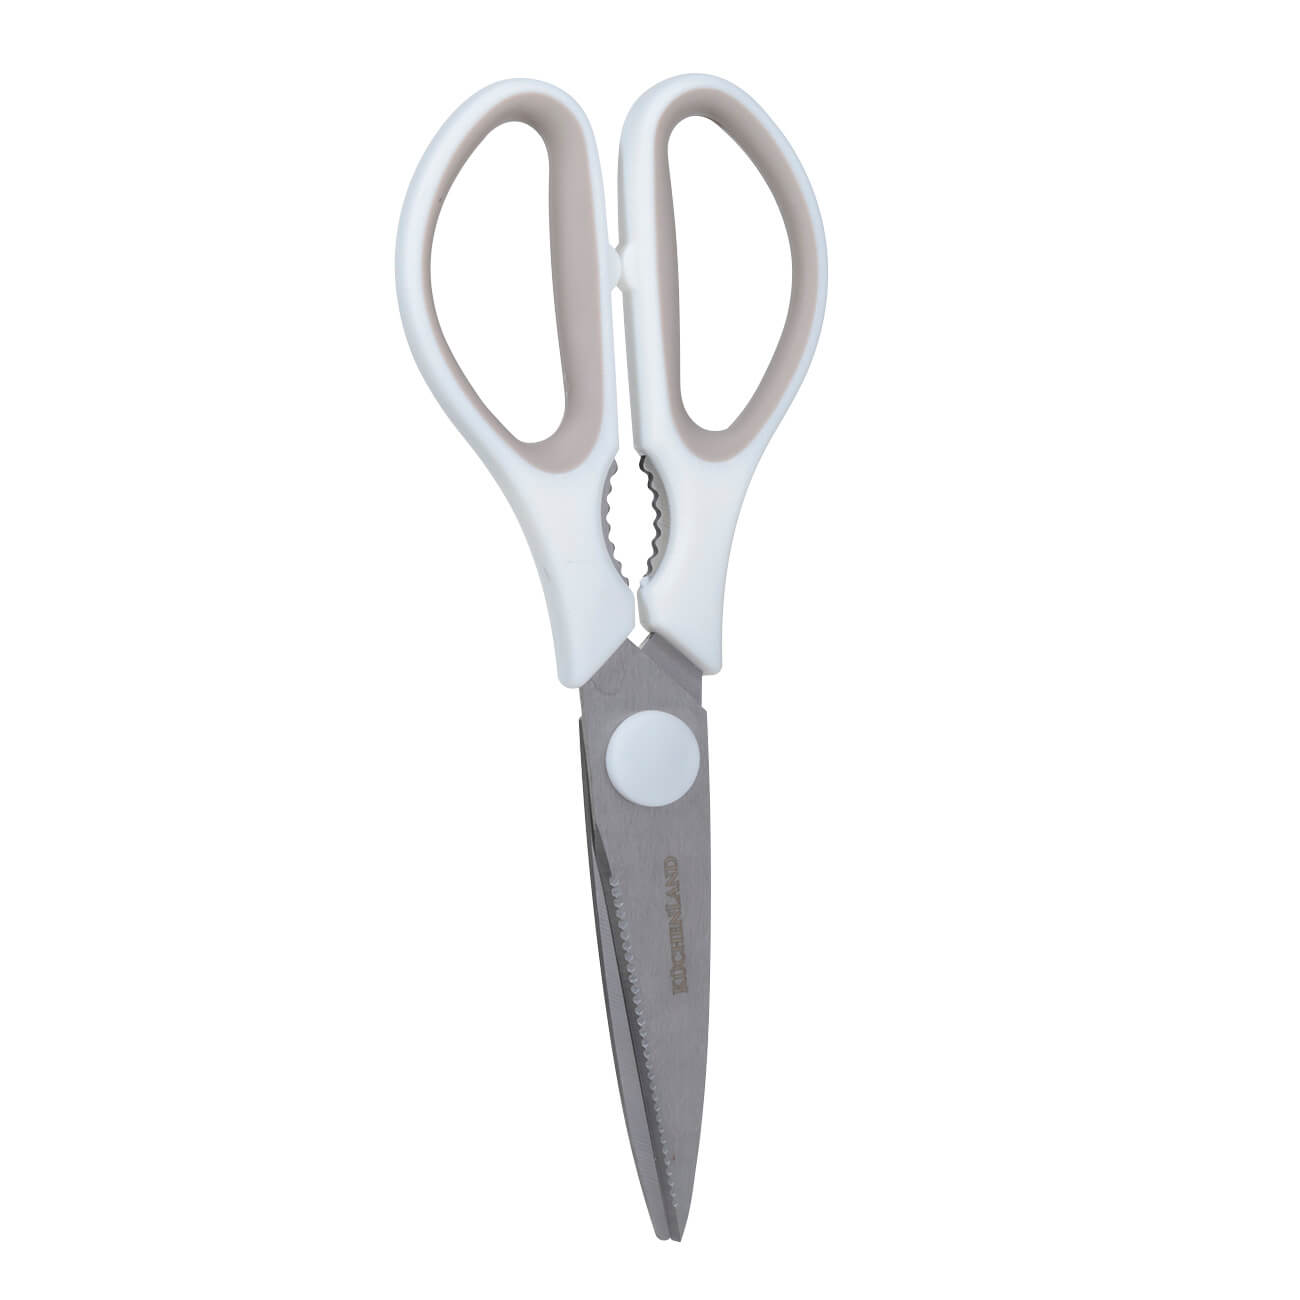 Ножницы кухонные, 21 см, сталь/пластик, кремовые, Assist кухонные ножницы huohou hu0068 powerful kitchen scissors